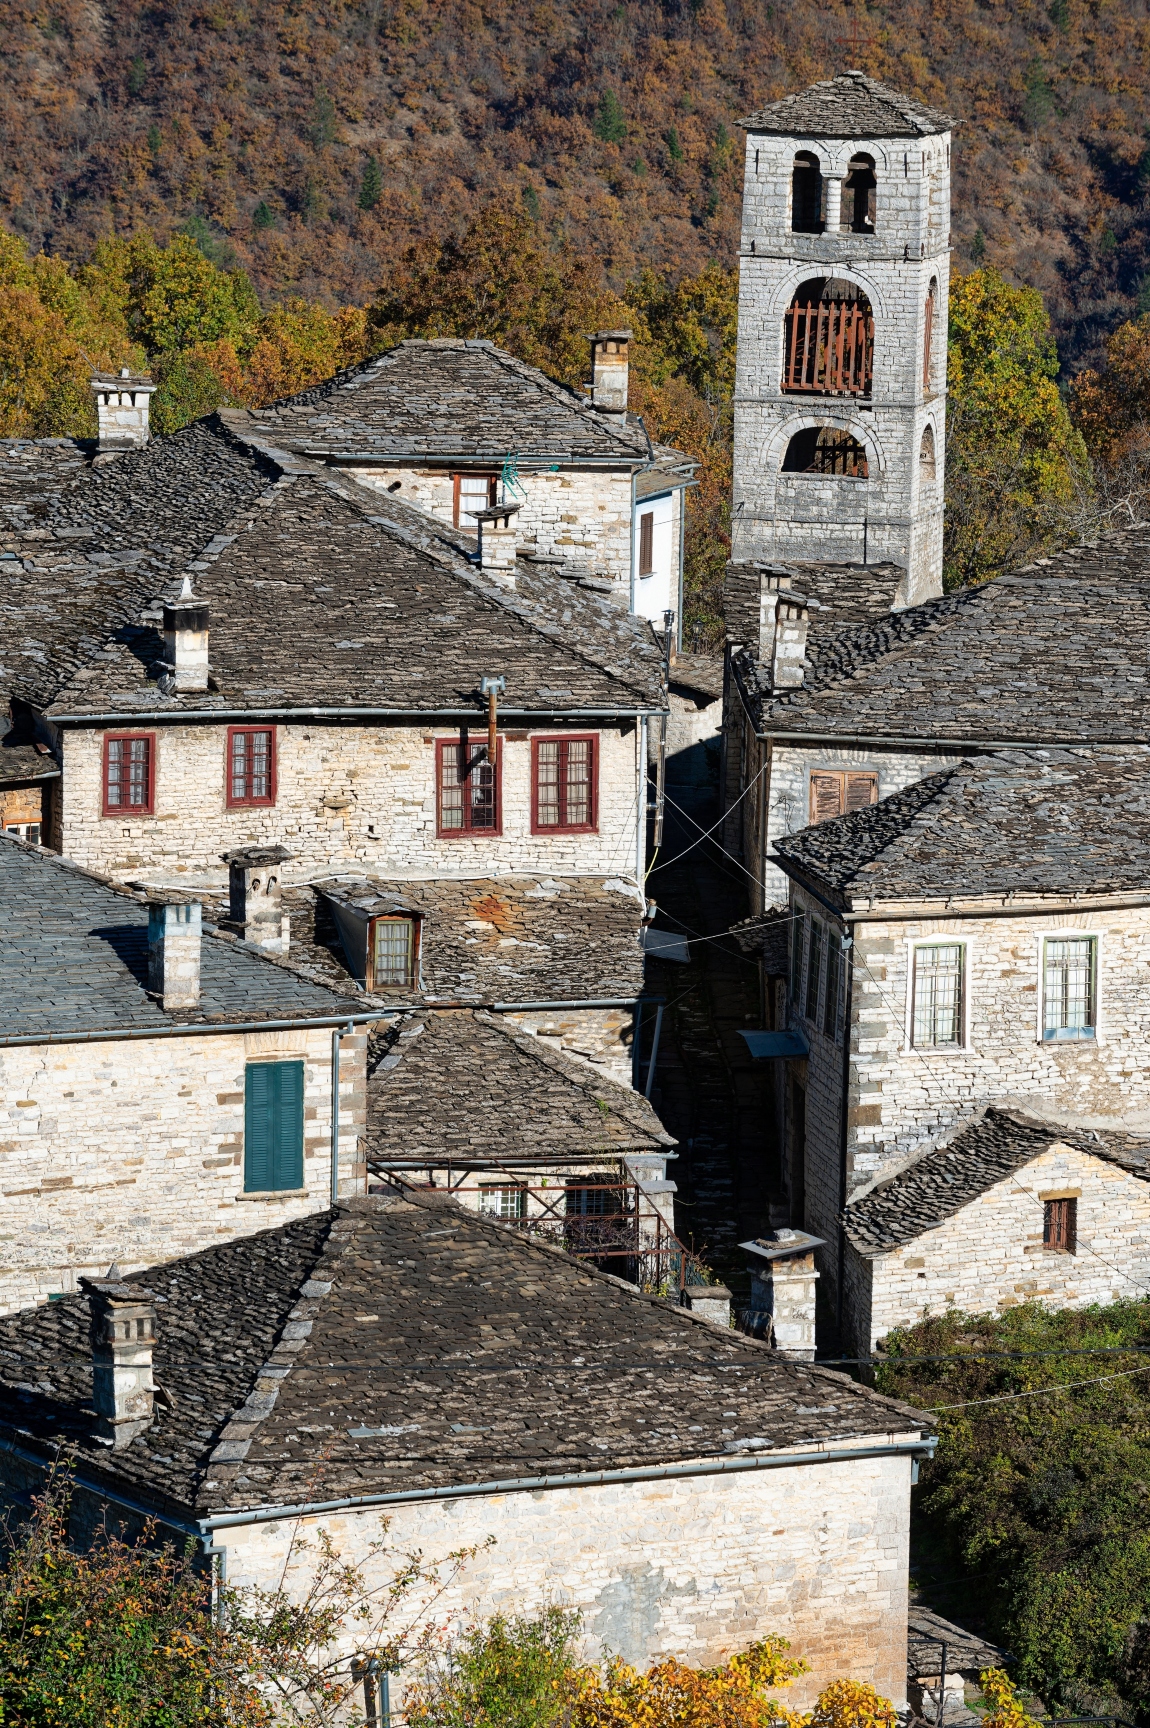 Traditional Zagorian architecture